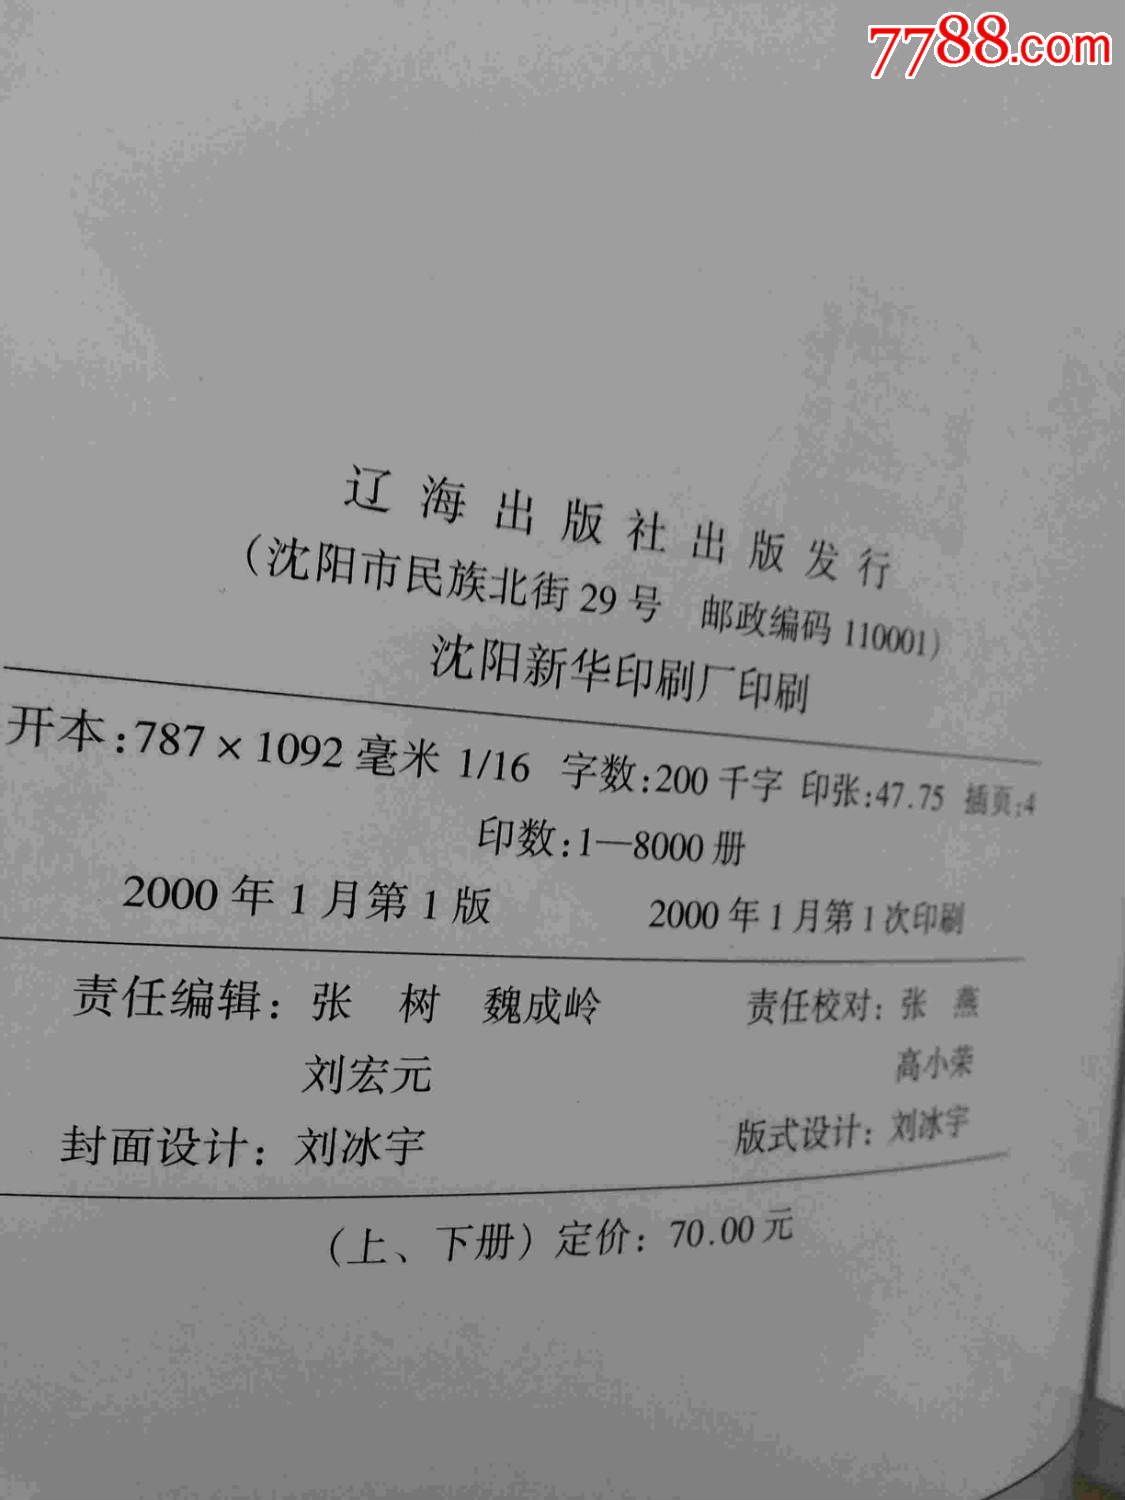 窥伺中国-20世纪初日本间谍的镜头(上.下)-价格